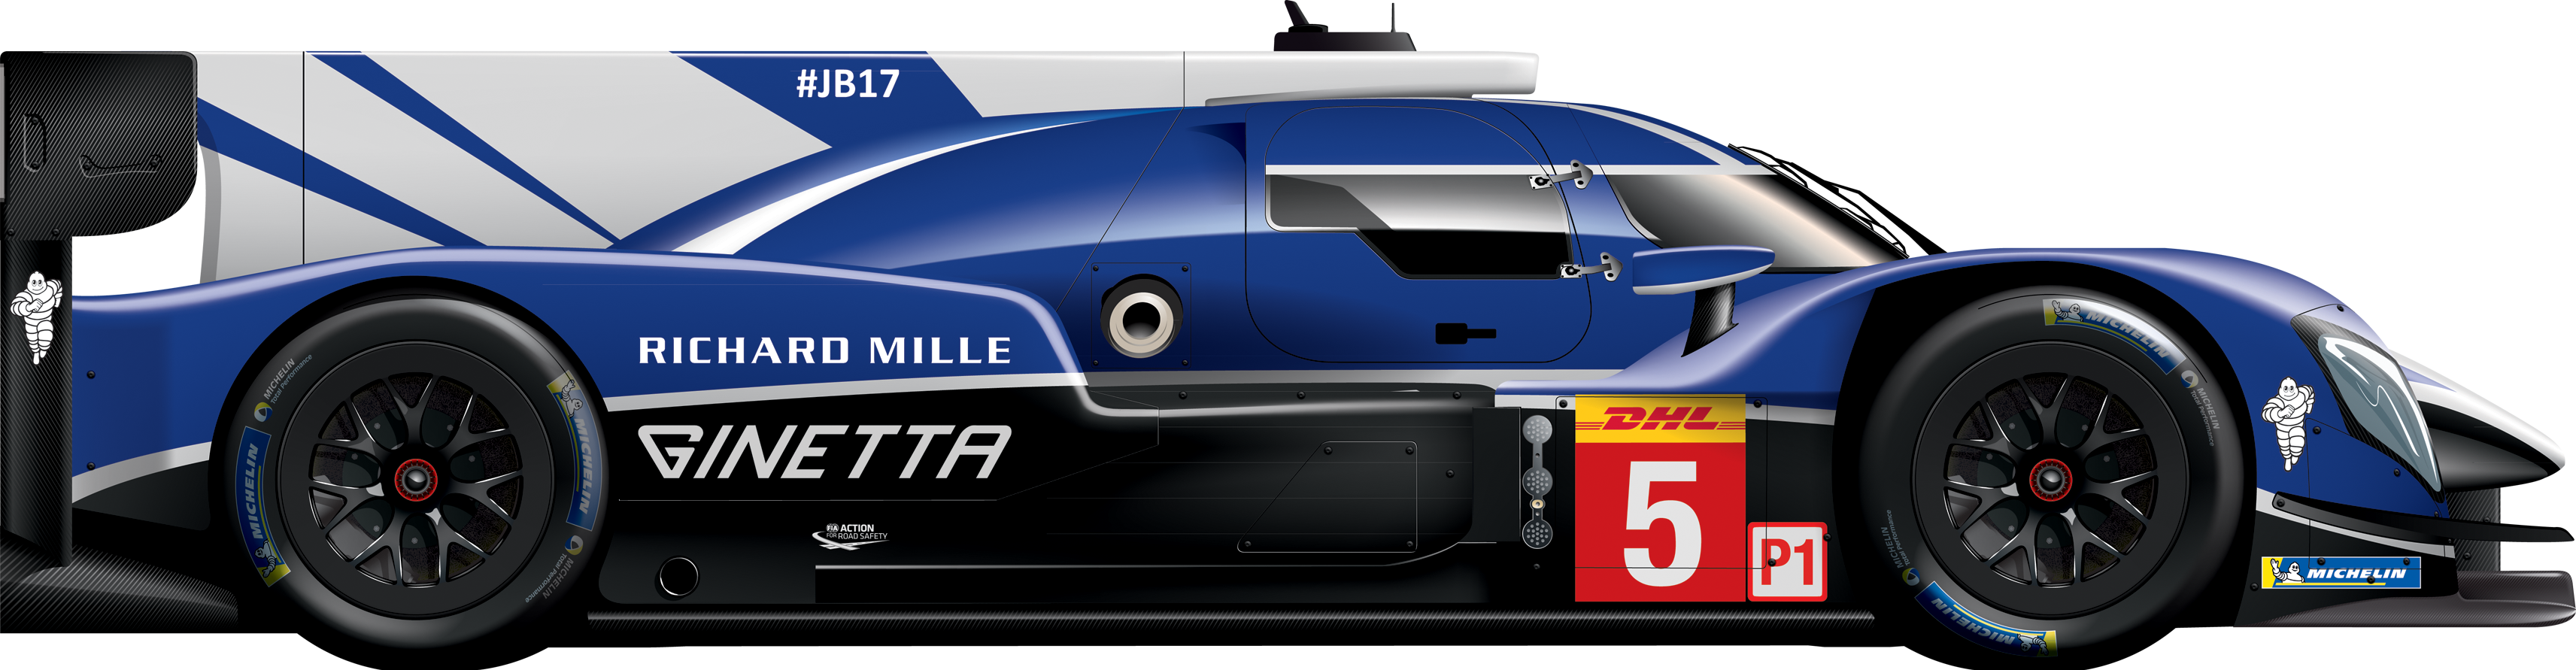 5 - Ginetta G60-LT-P1 - Mecachrome - FIA World Endurance Championship